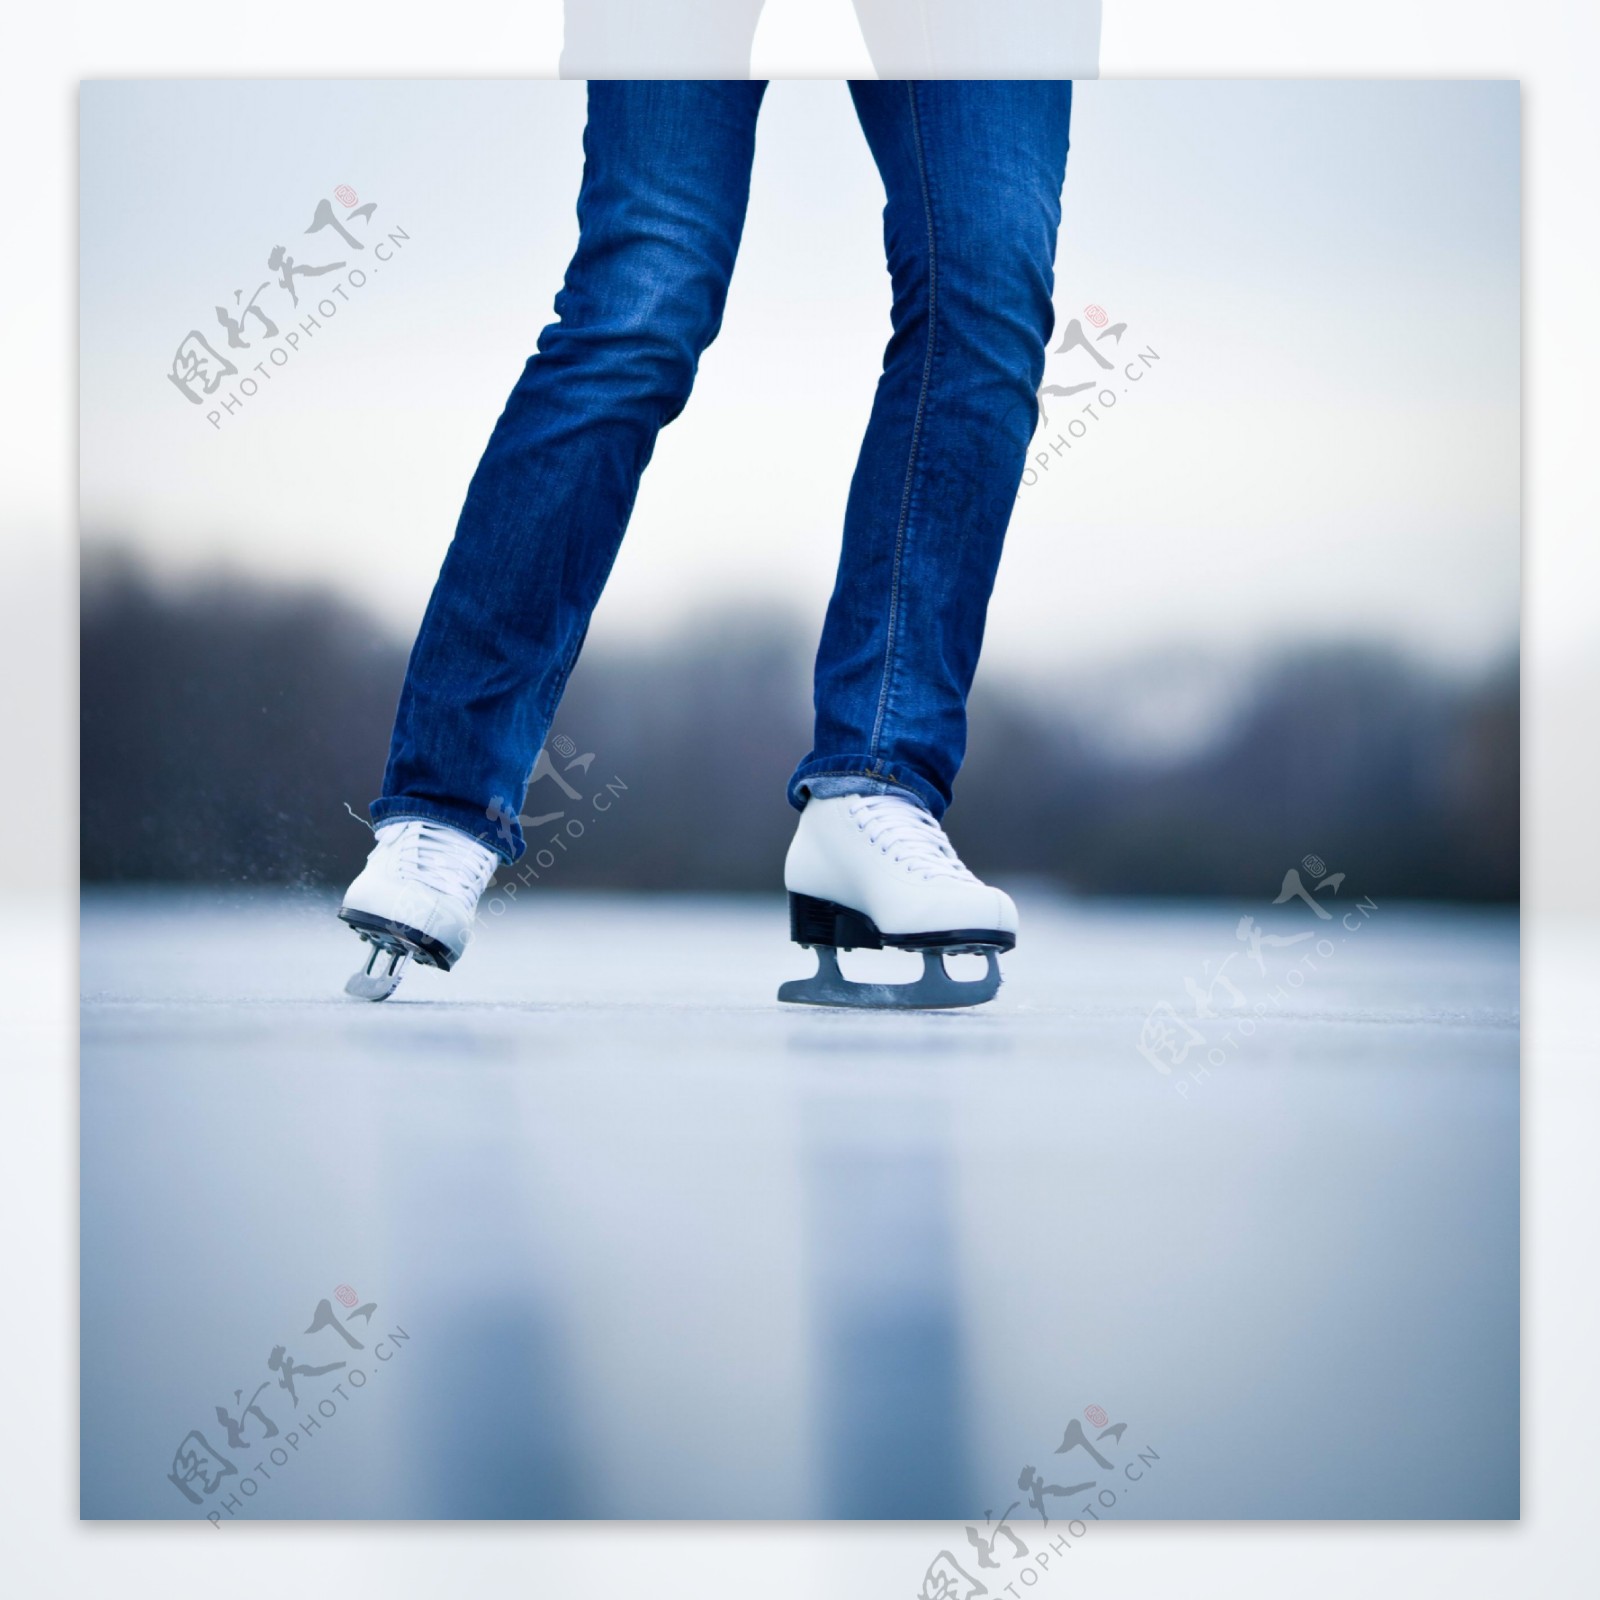 溜冰图片大全-溜冰高清图片下载-觅知网